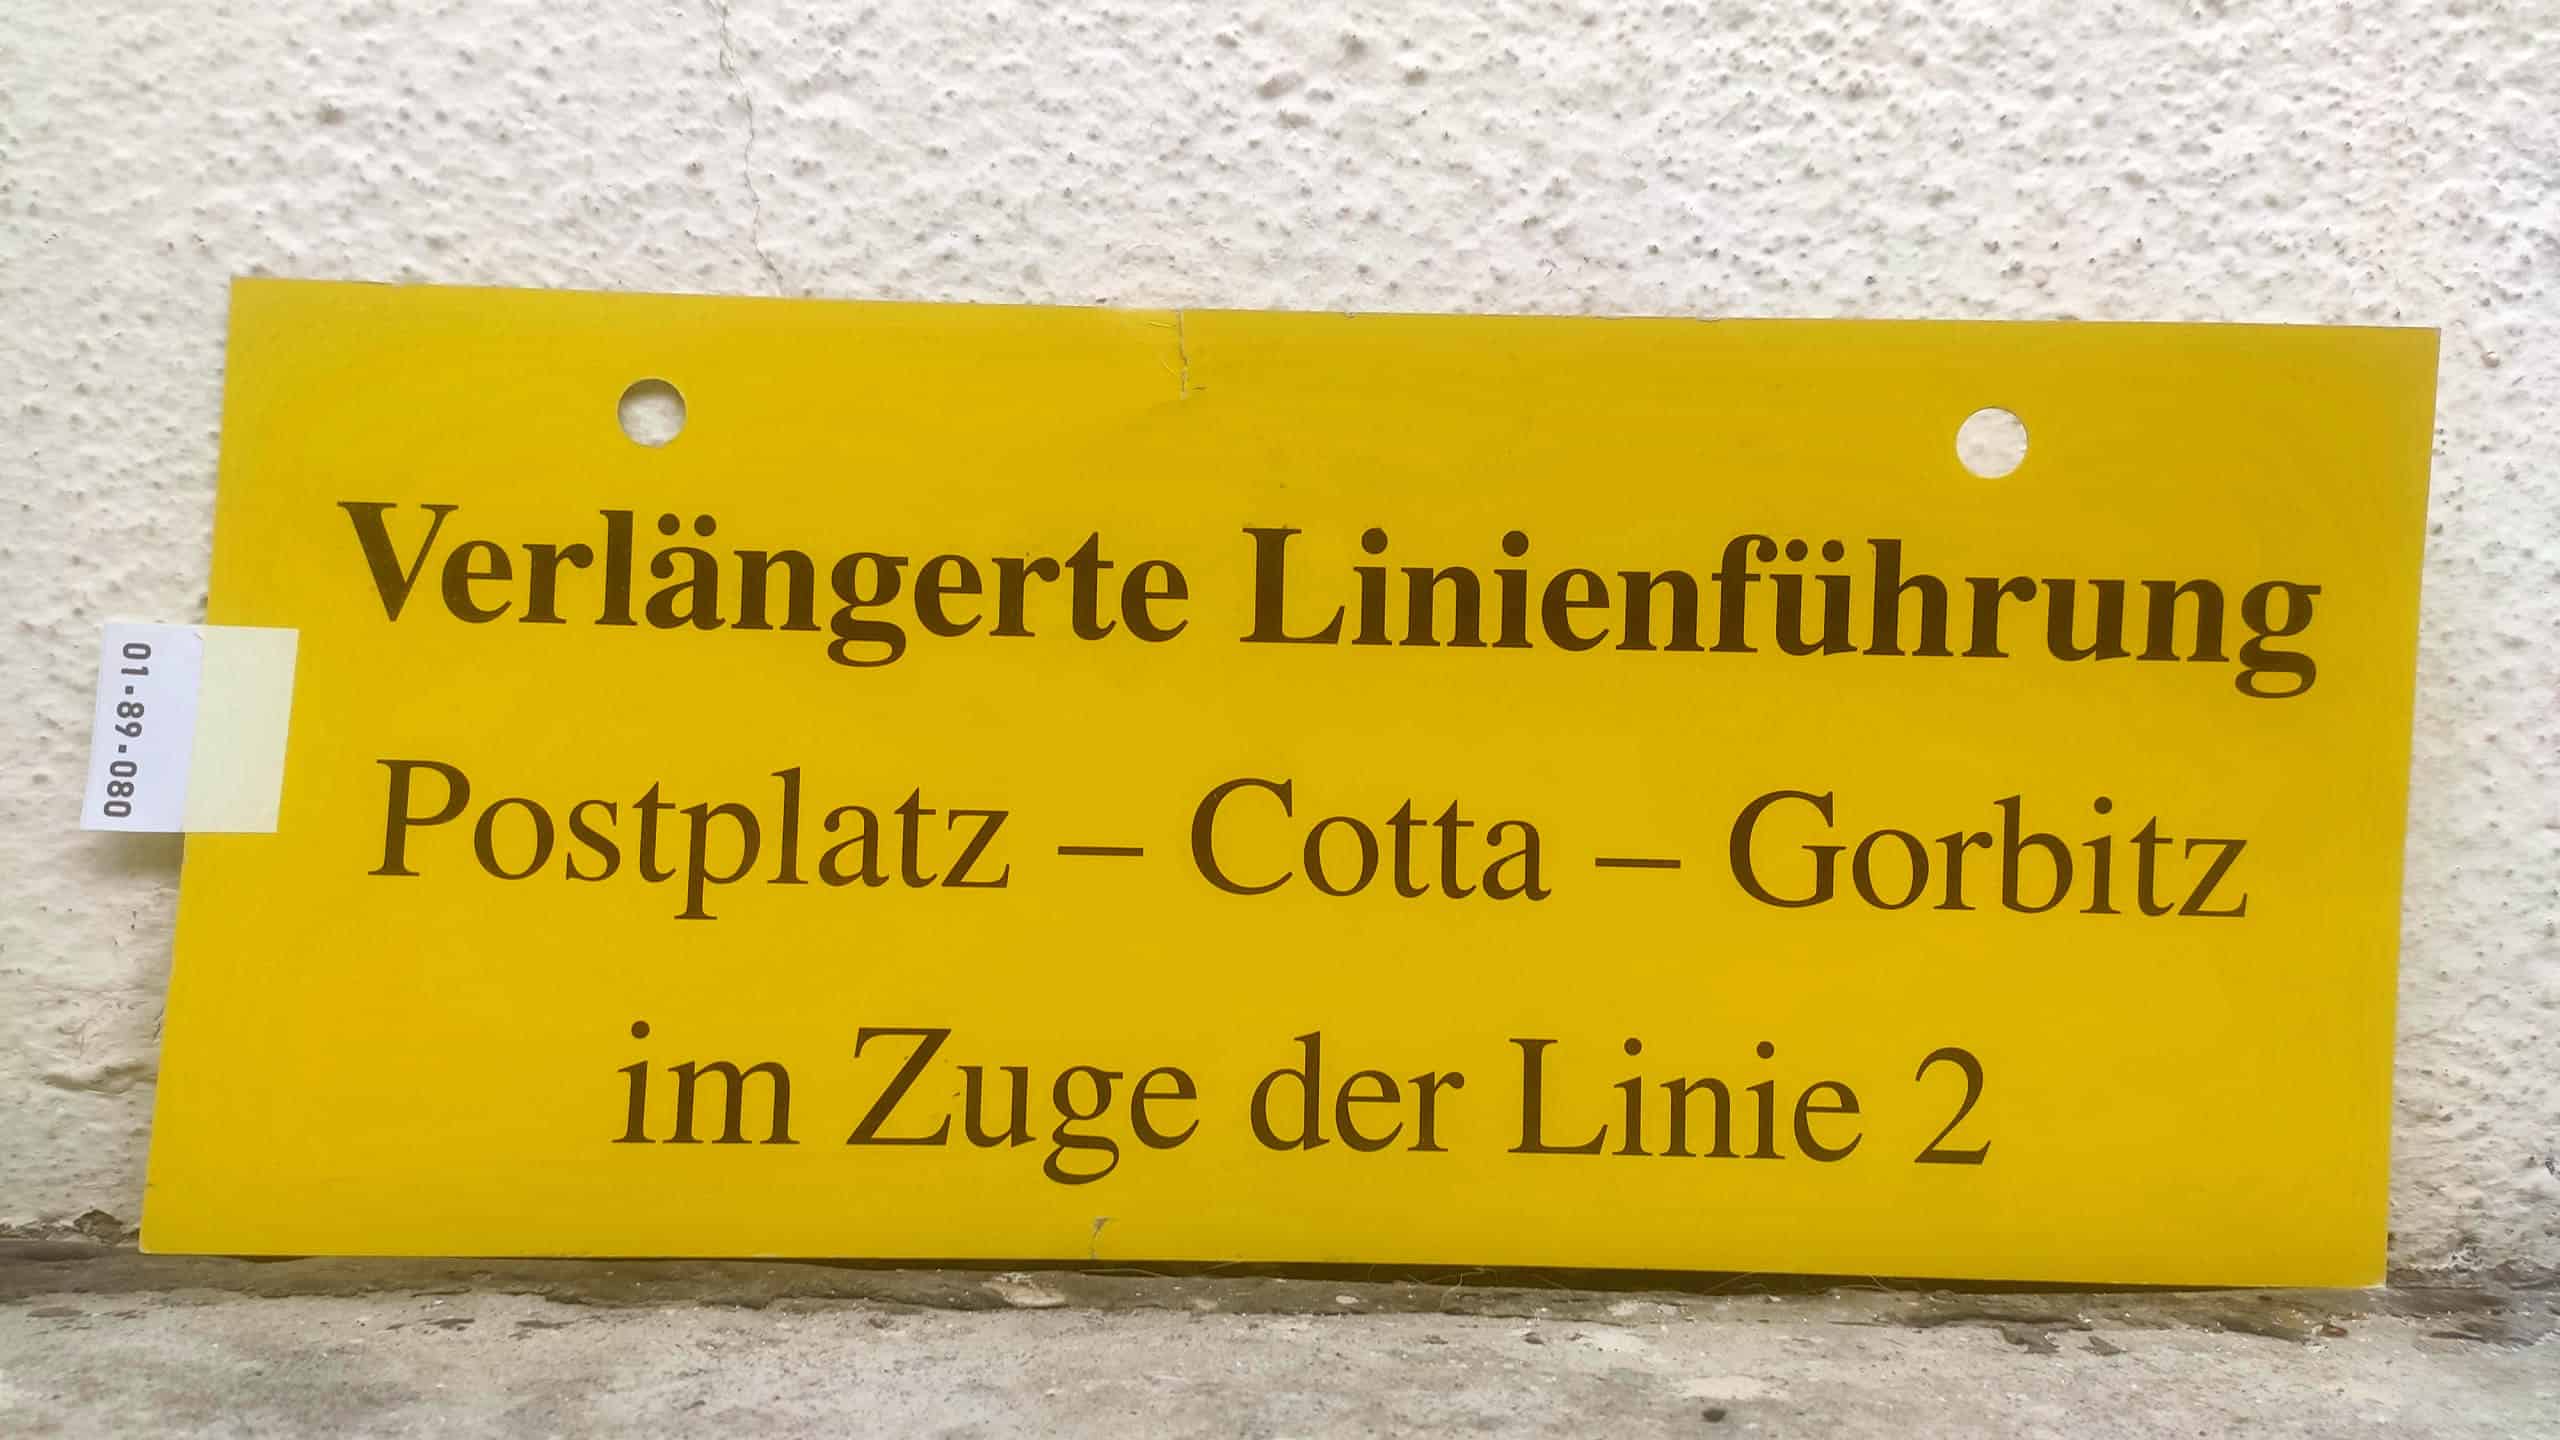 Verlängerte Linienführung Postplatz - Gorbitz im Zuge der Linie 2